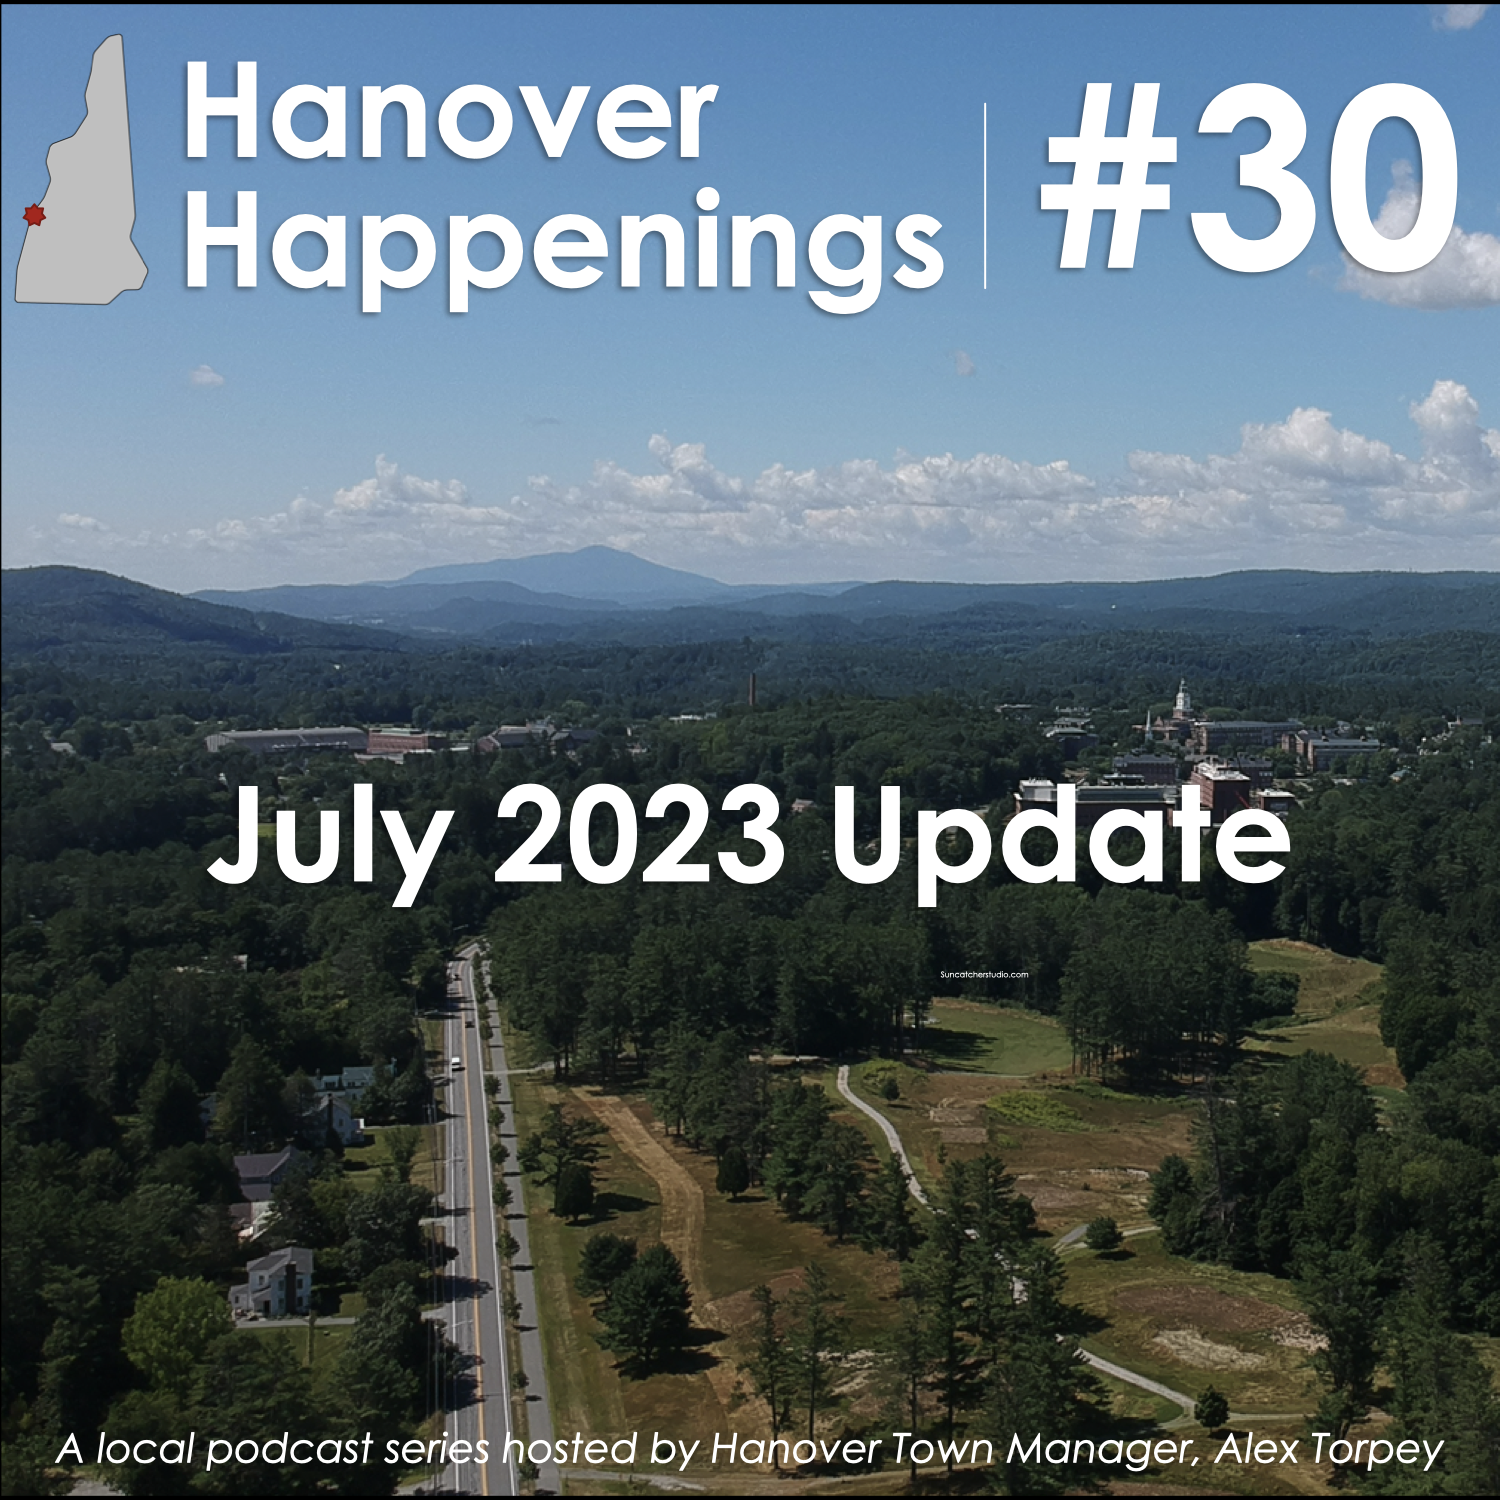 Hanover Happenings July 2023 Update